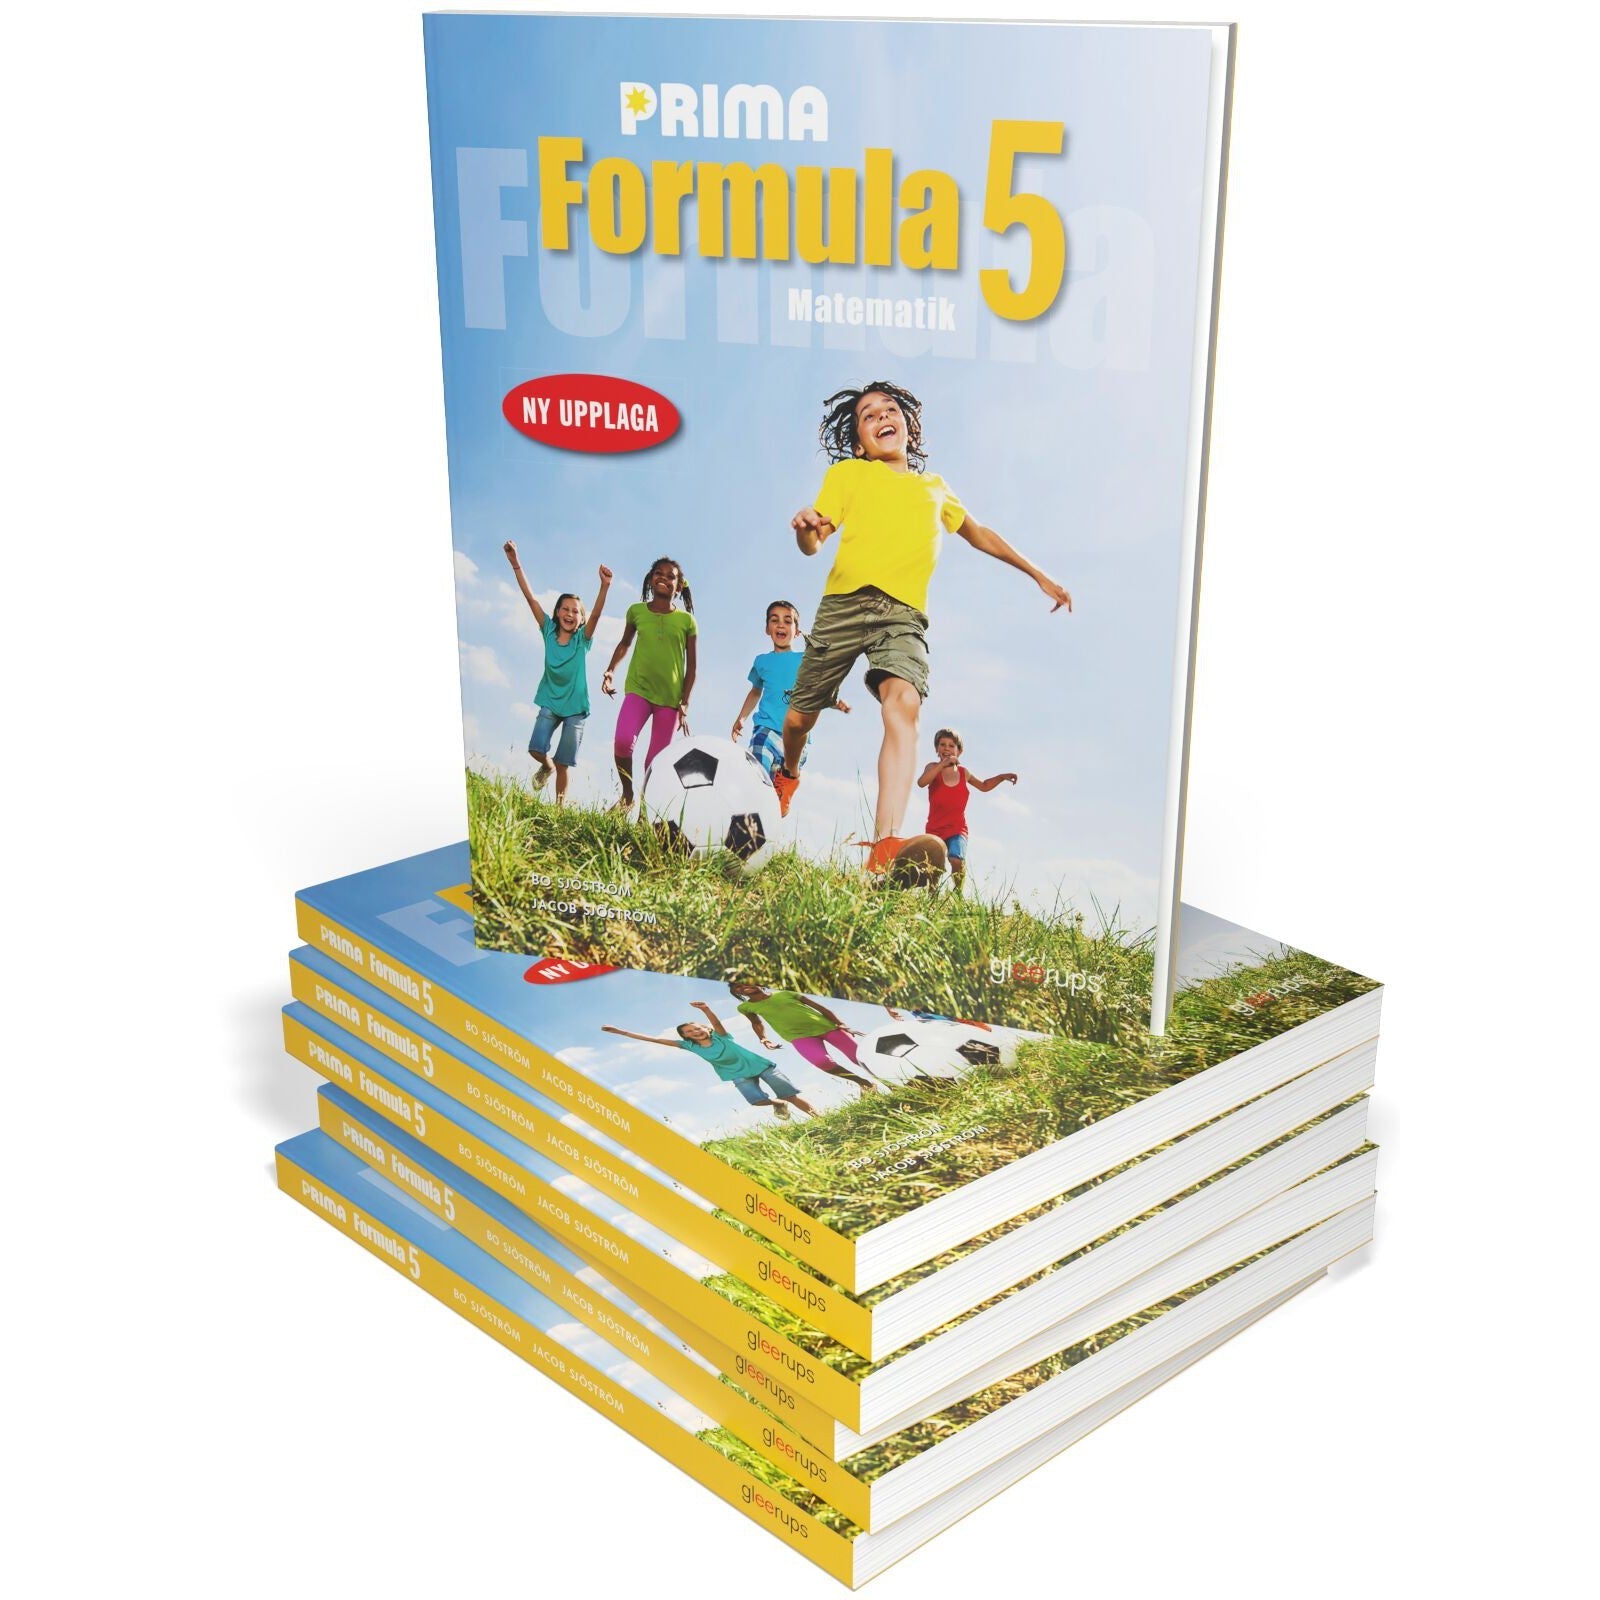 Läs mer om Prima Formula 5 25 ex+25 ex elevwebb + lärarwebb